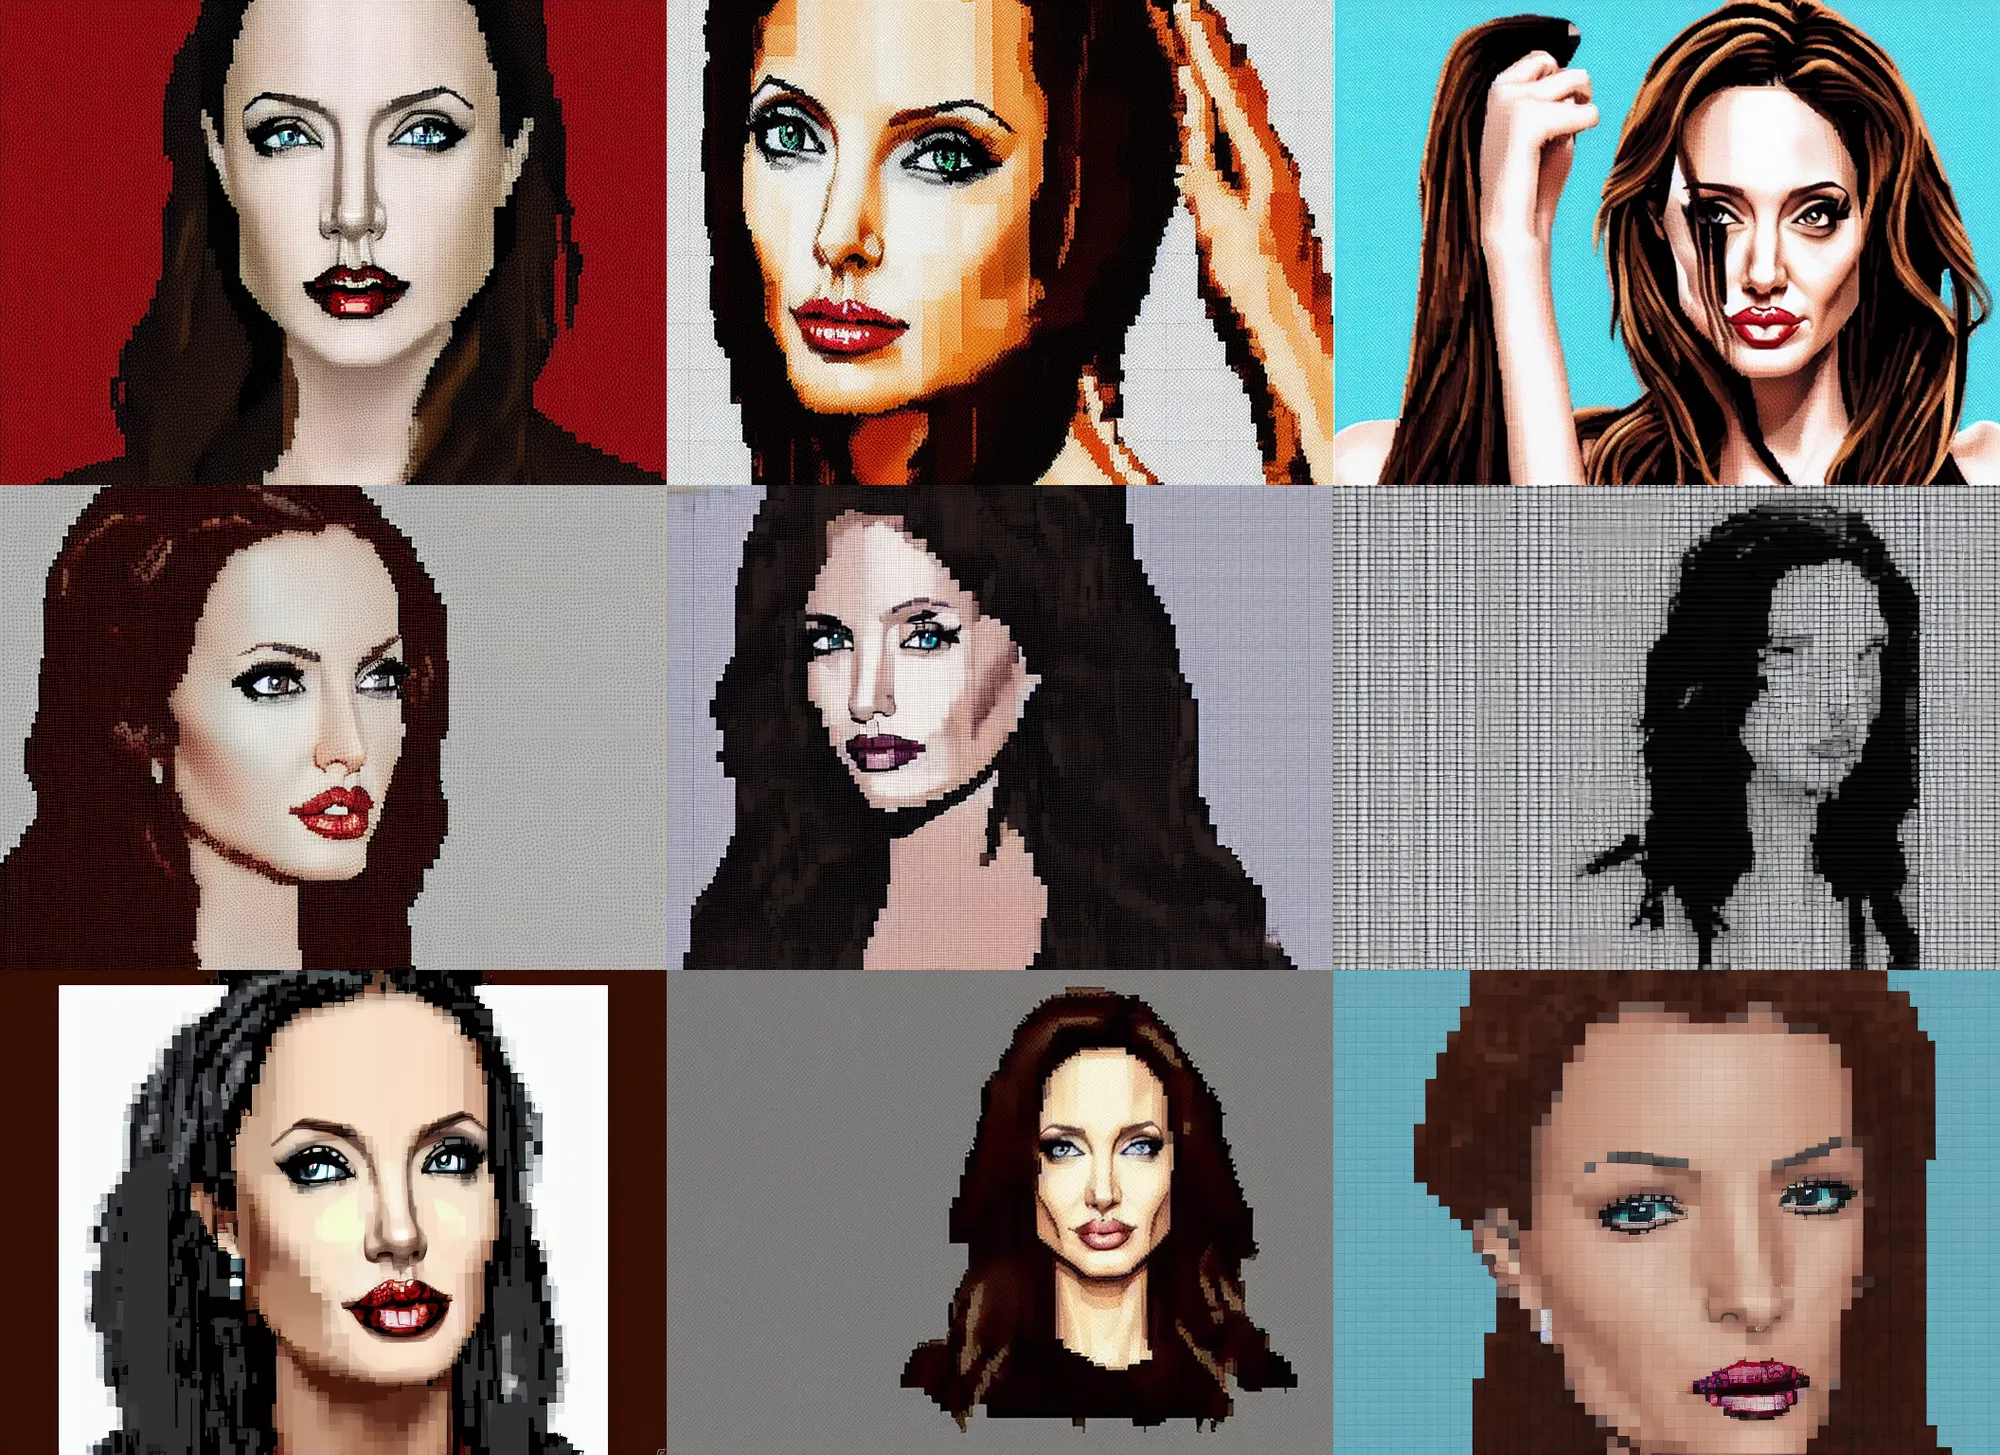 Prompt: Angeline Jolie, Pixel Art